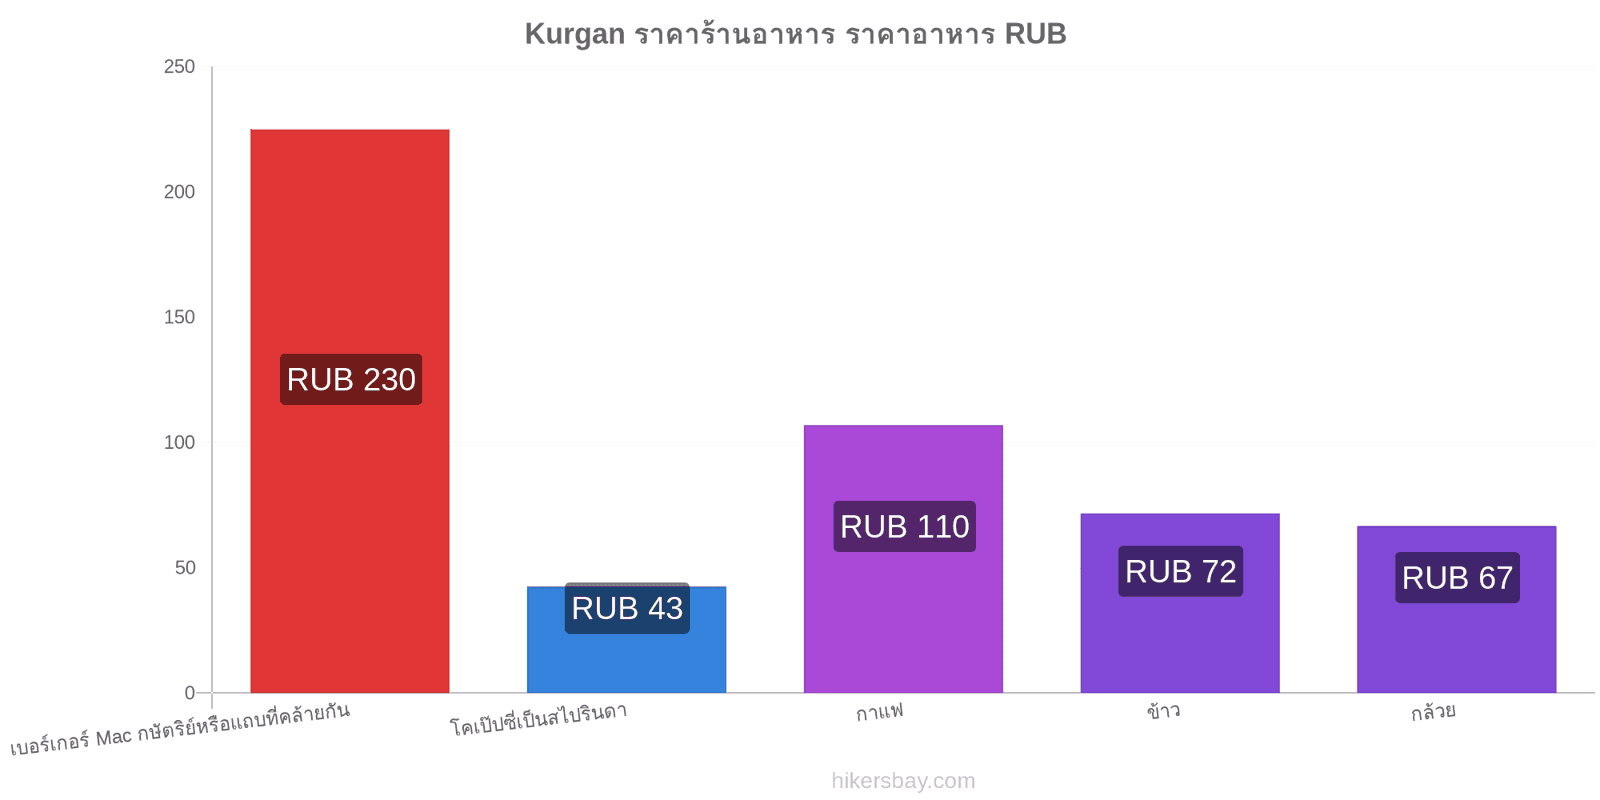 Kurgan การเปลี่ยนแปลงราคา hikersbay.com